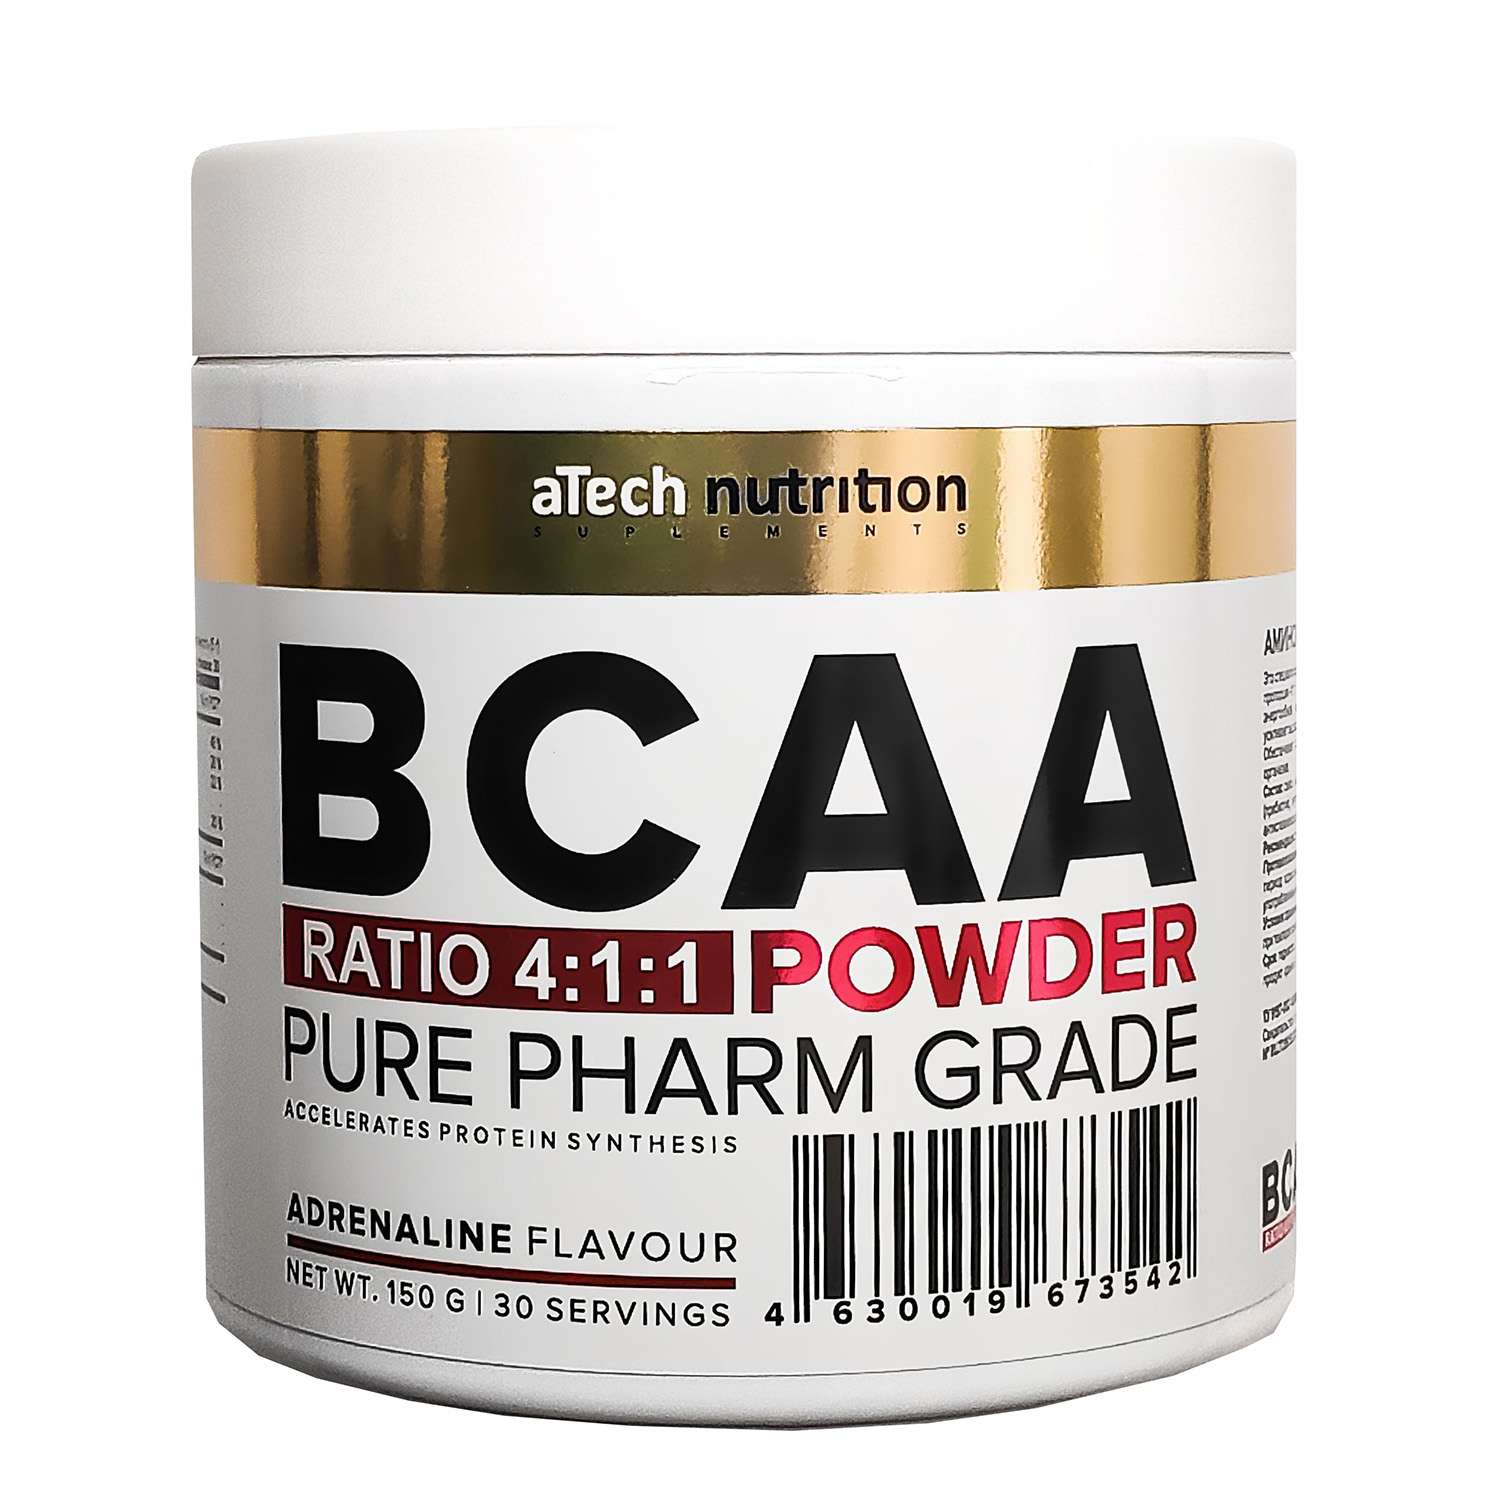 БЦАА 4-1-1 aTech nutrition адреналин 150г - фото 1